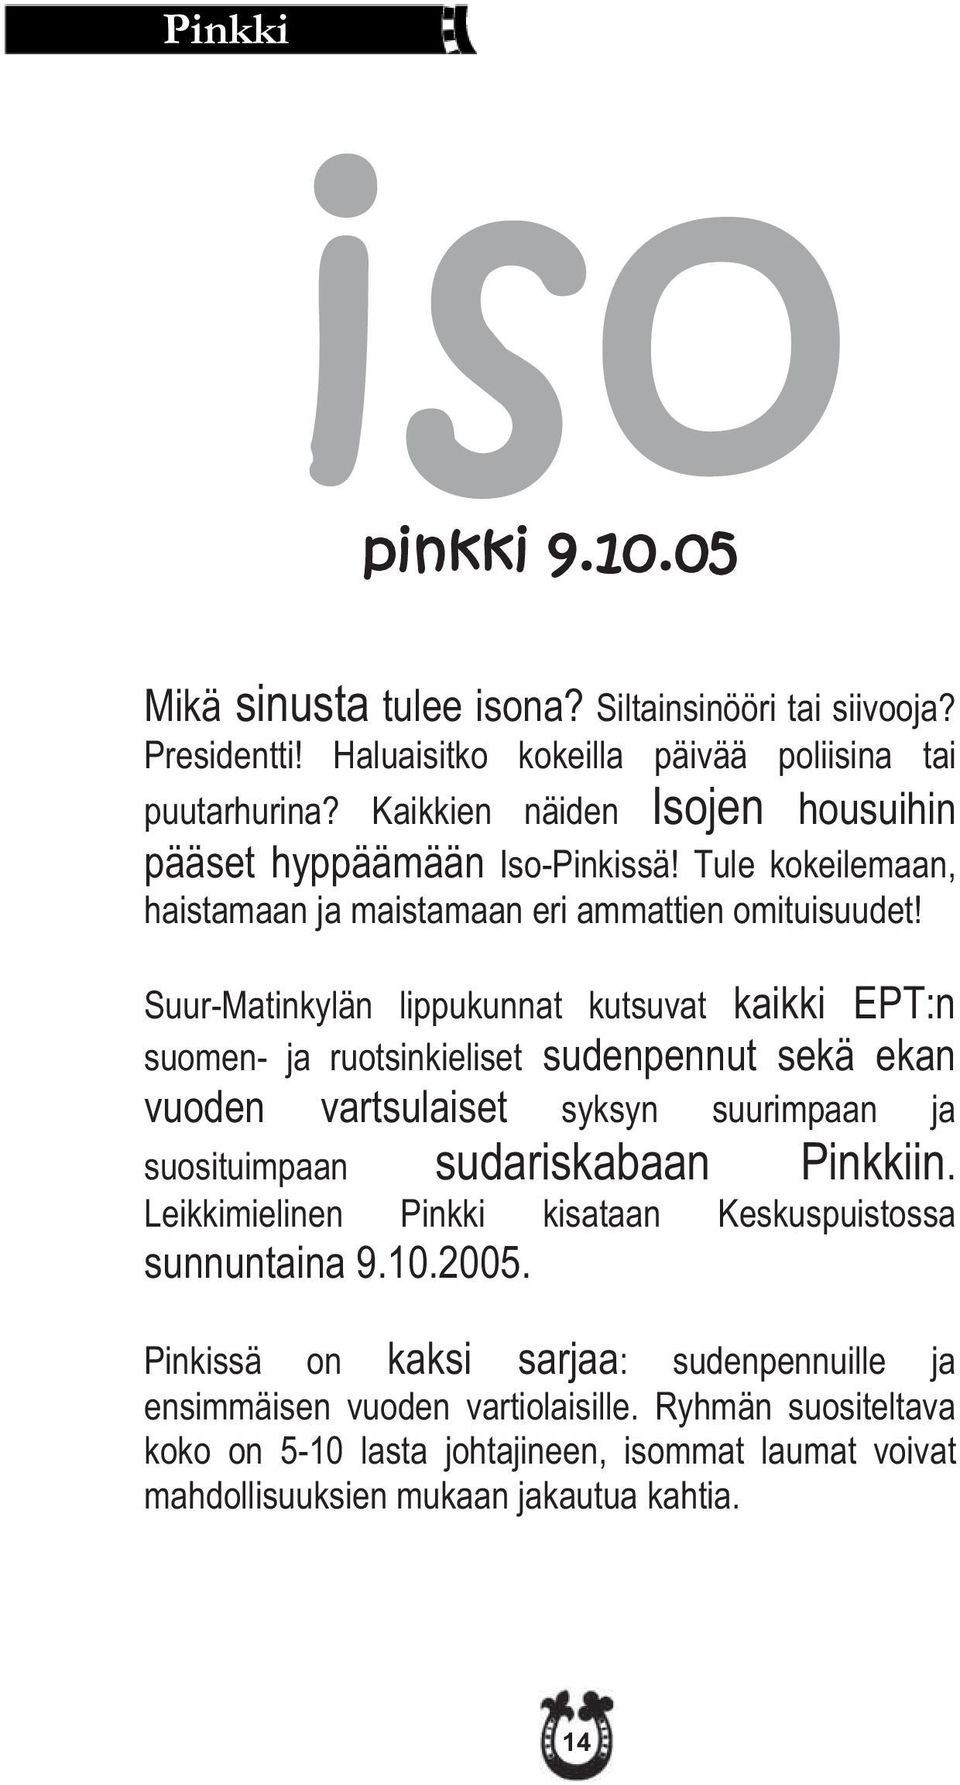 Suur-Matinkylän lippukunnat kutsuvat kaikki EPT:n suomen- ja ruotsinkieliset sudenpennut sekä ekan vuoden vartsulaiset syksyn suurimpaan ja suosituimpaan sudariskabaan Pinkkiin.